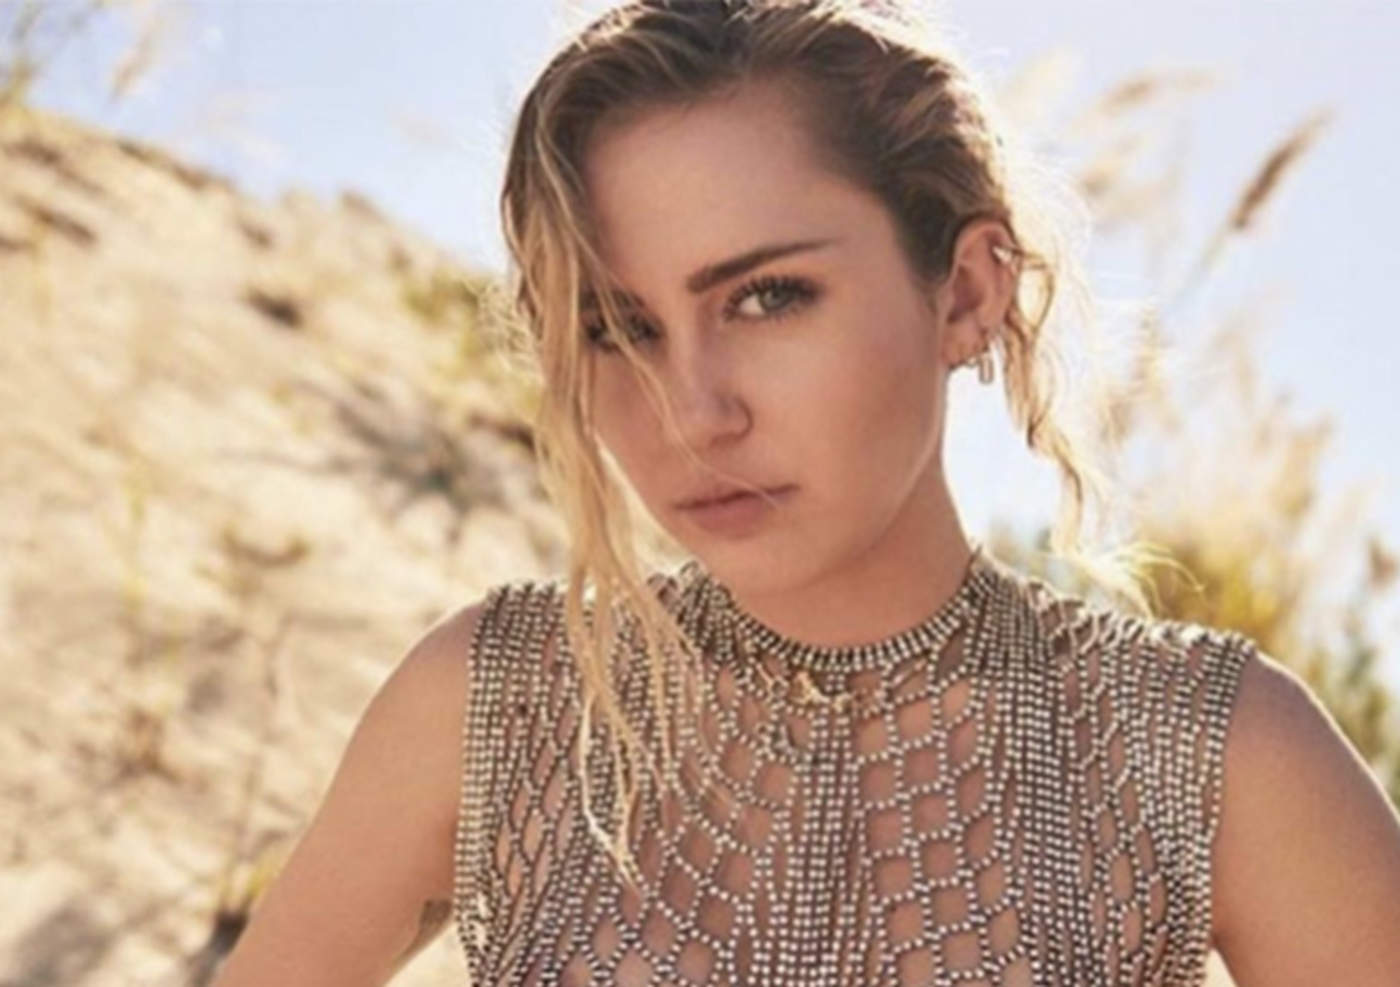 Miley Cyrus publica reveladora fotografía en Instagram